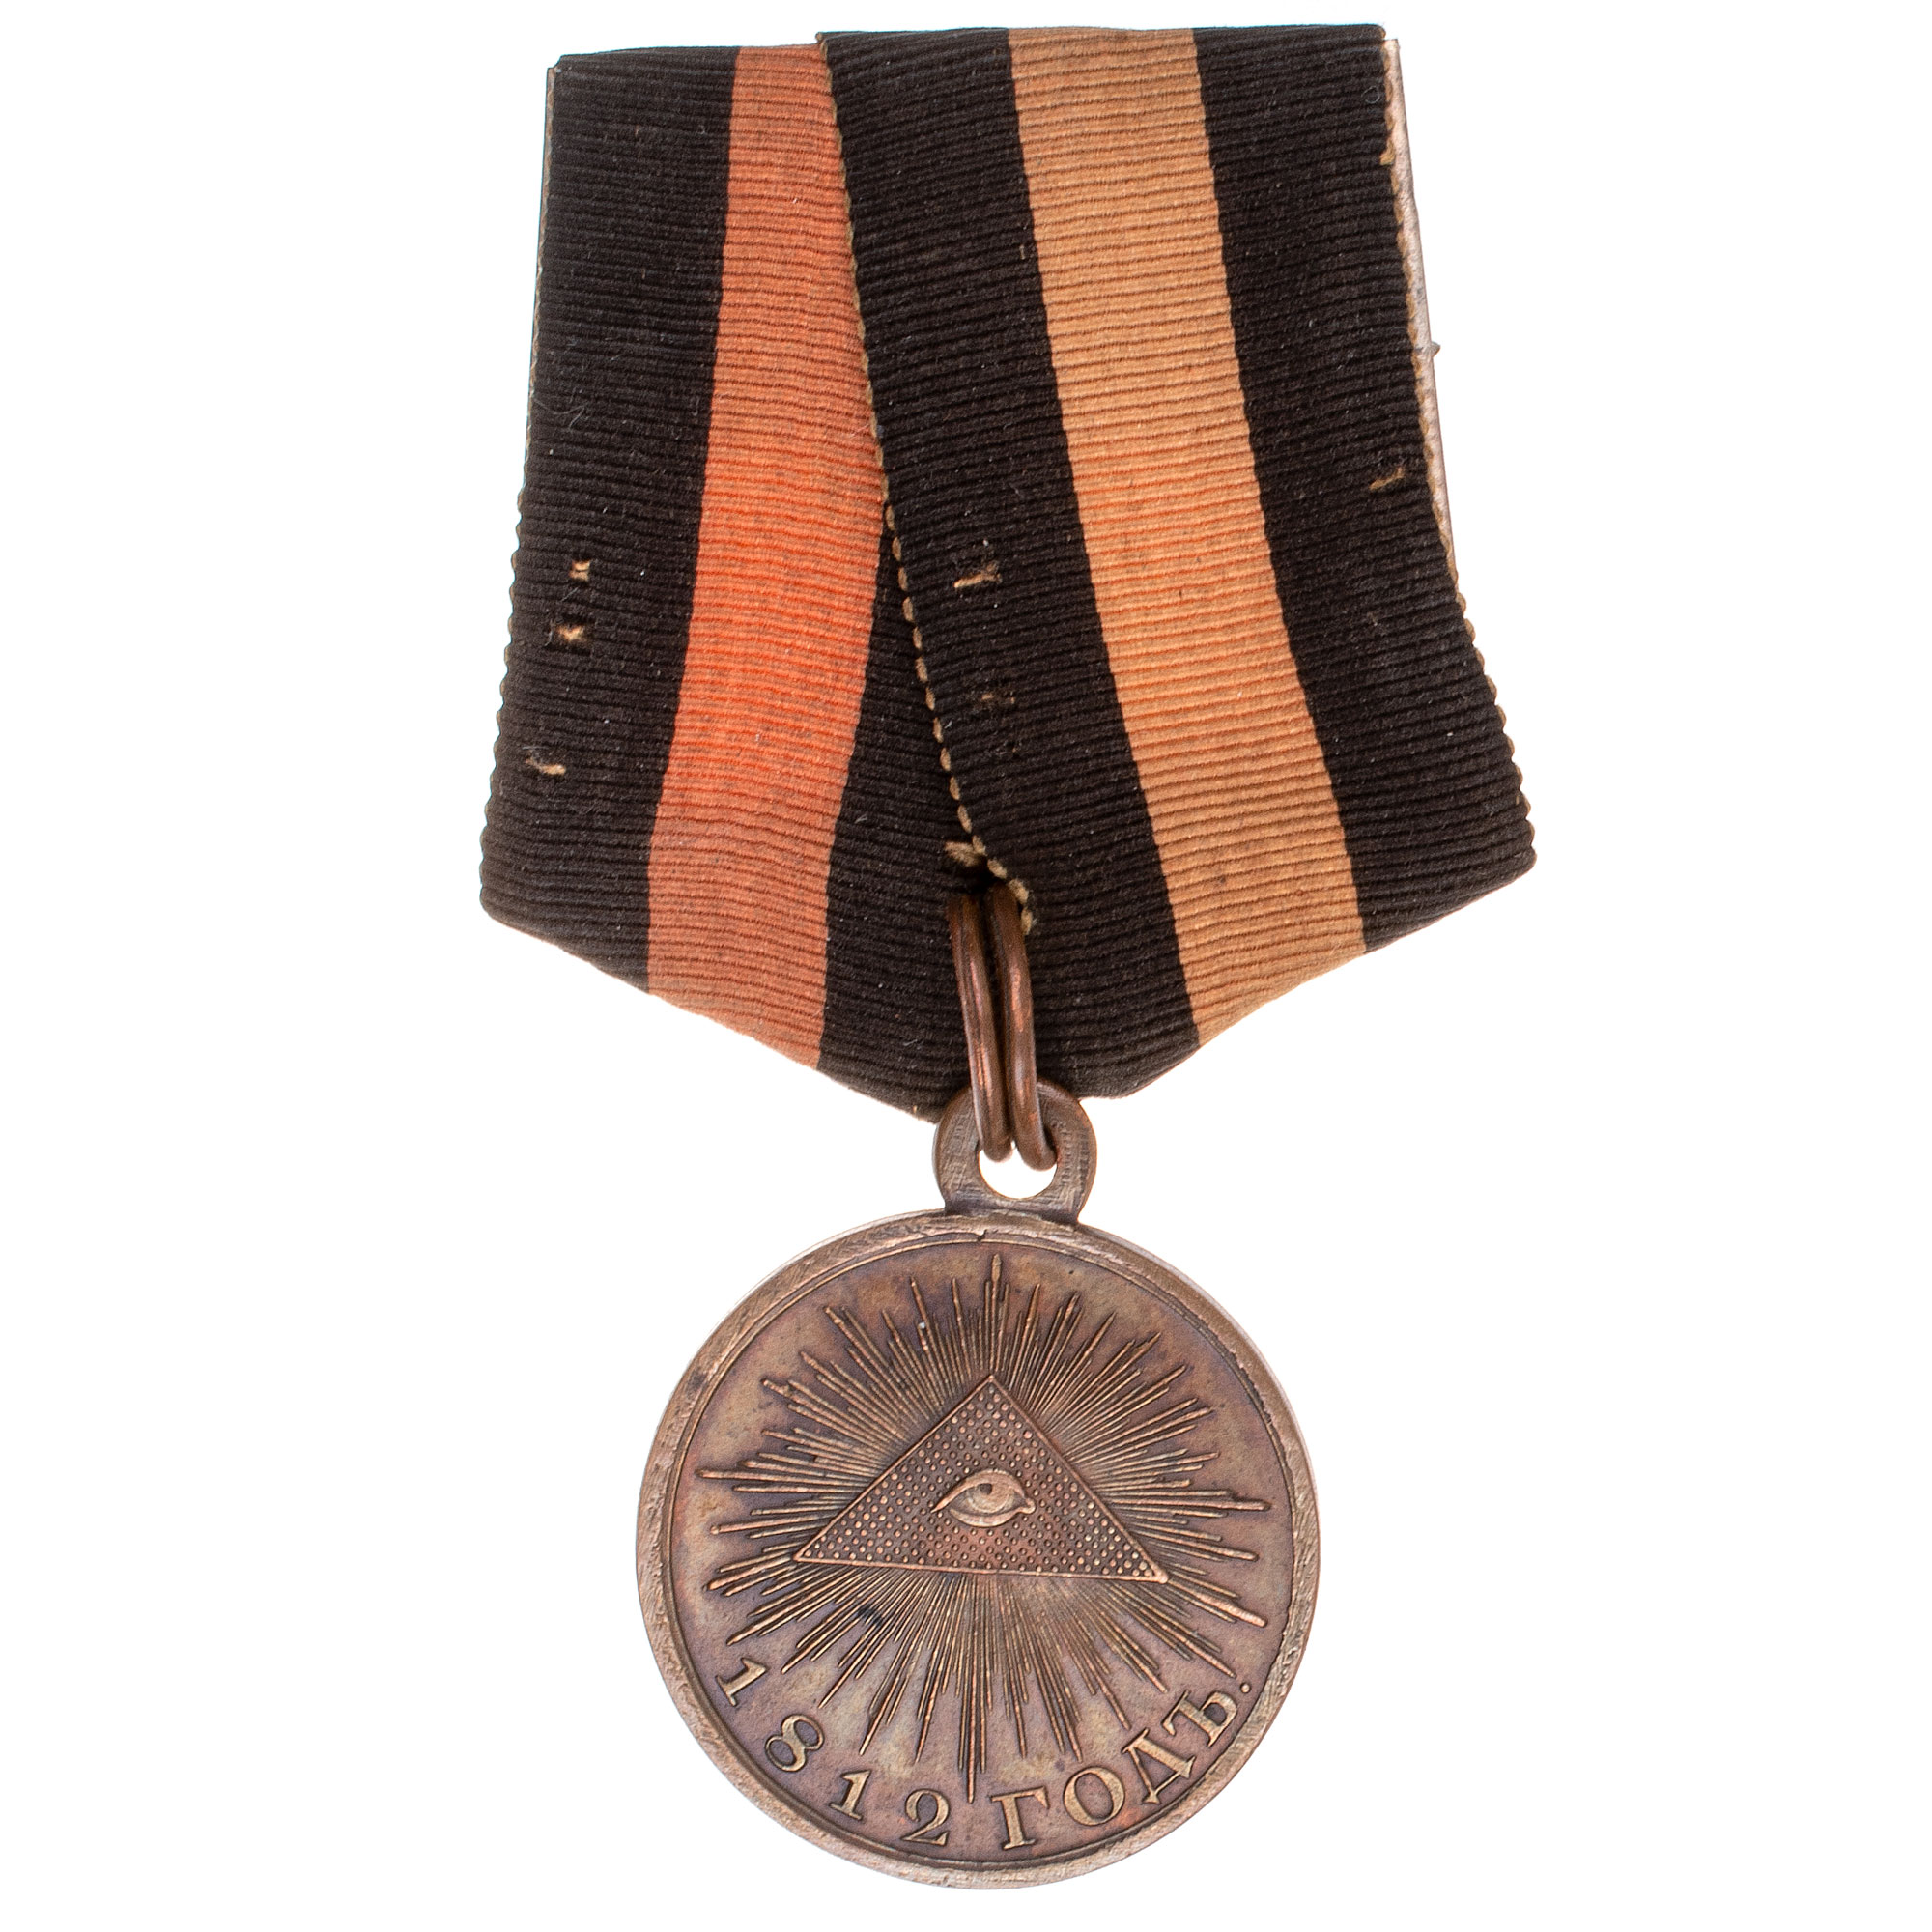 Медаль "В память Отечественной войны 1812 года" на колодке. Тёмная бронза.